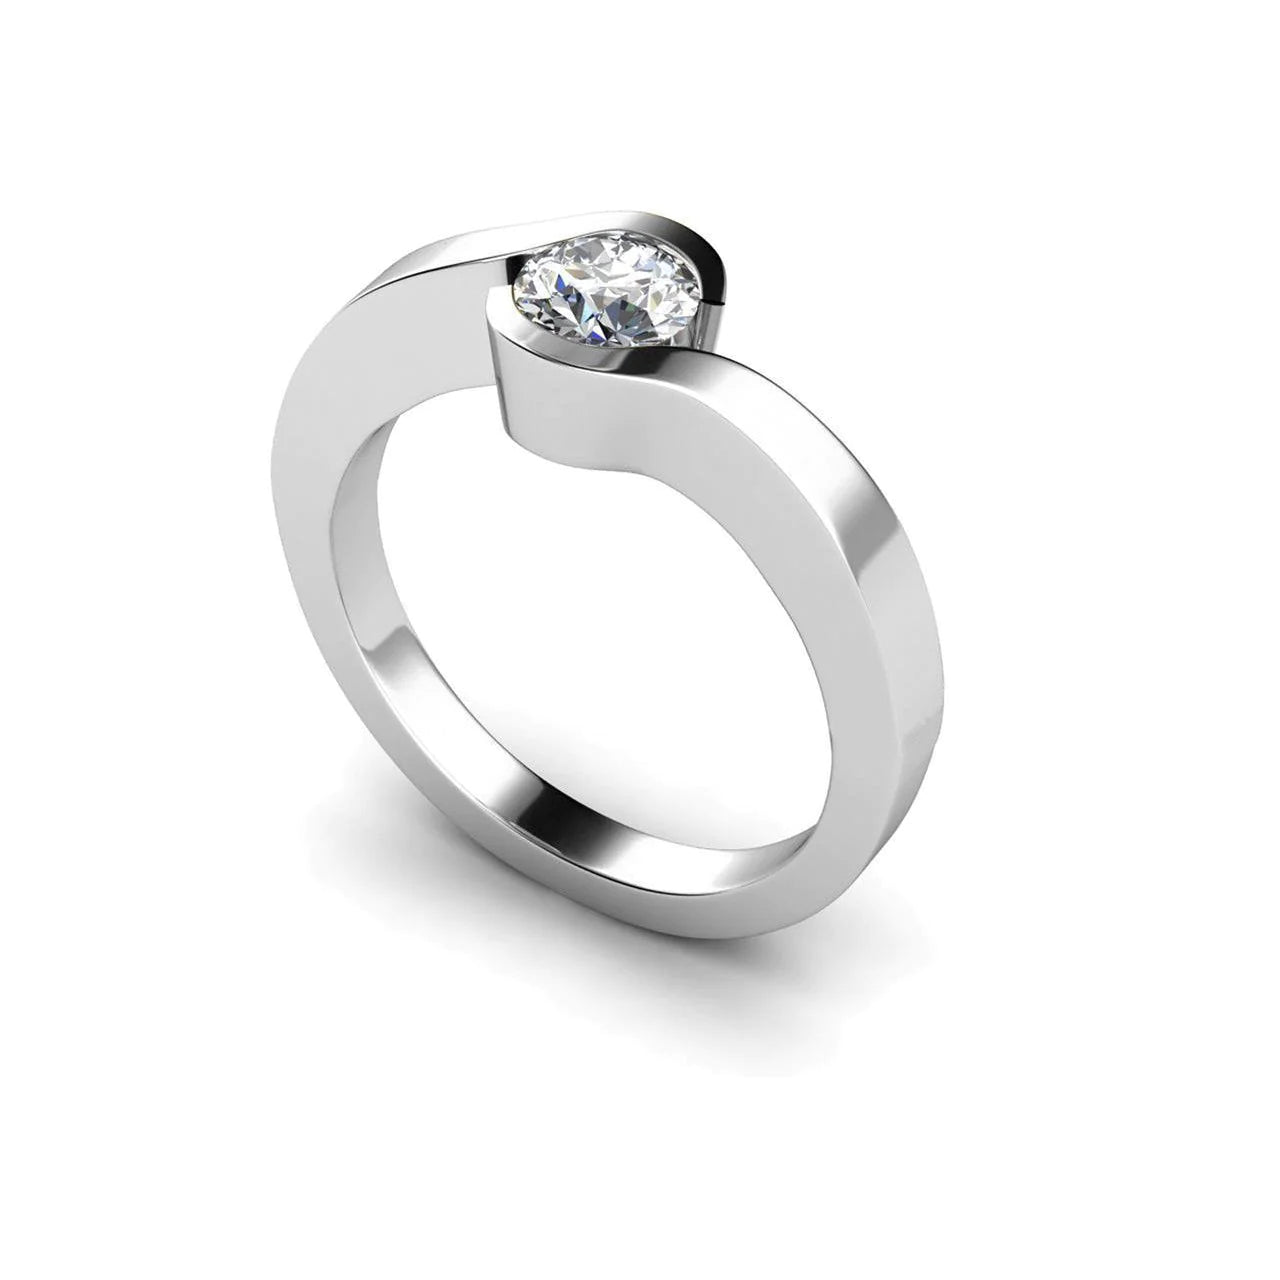 1 Carat Round Cut Real Diamond Engagement Ring 14K Gold White